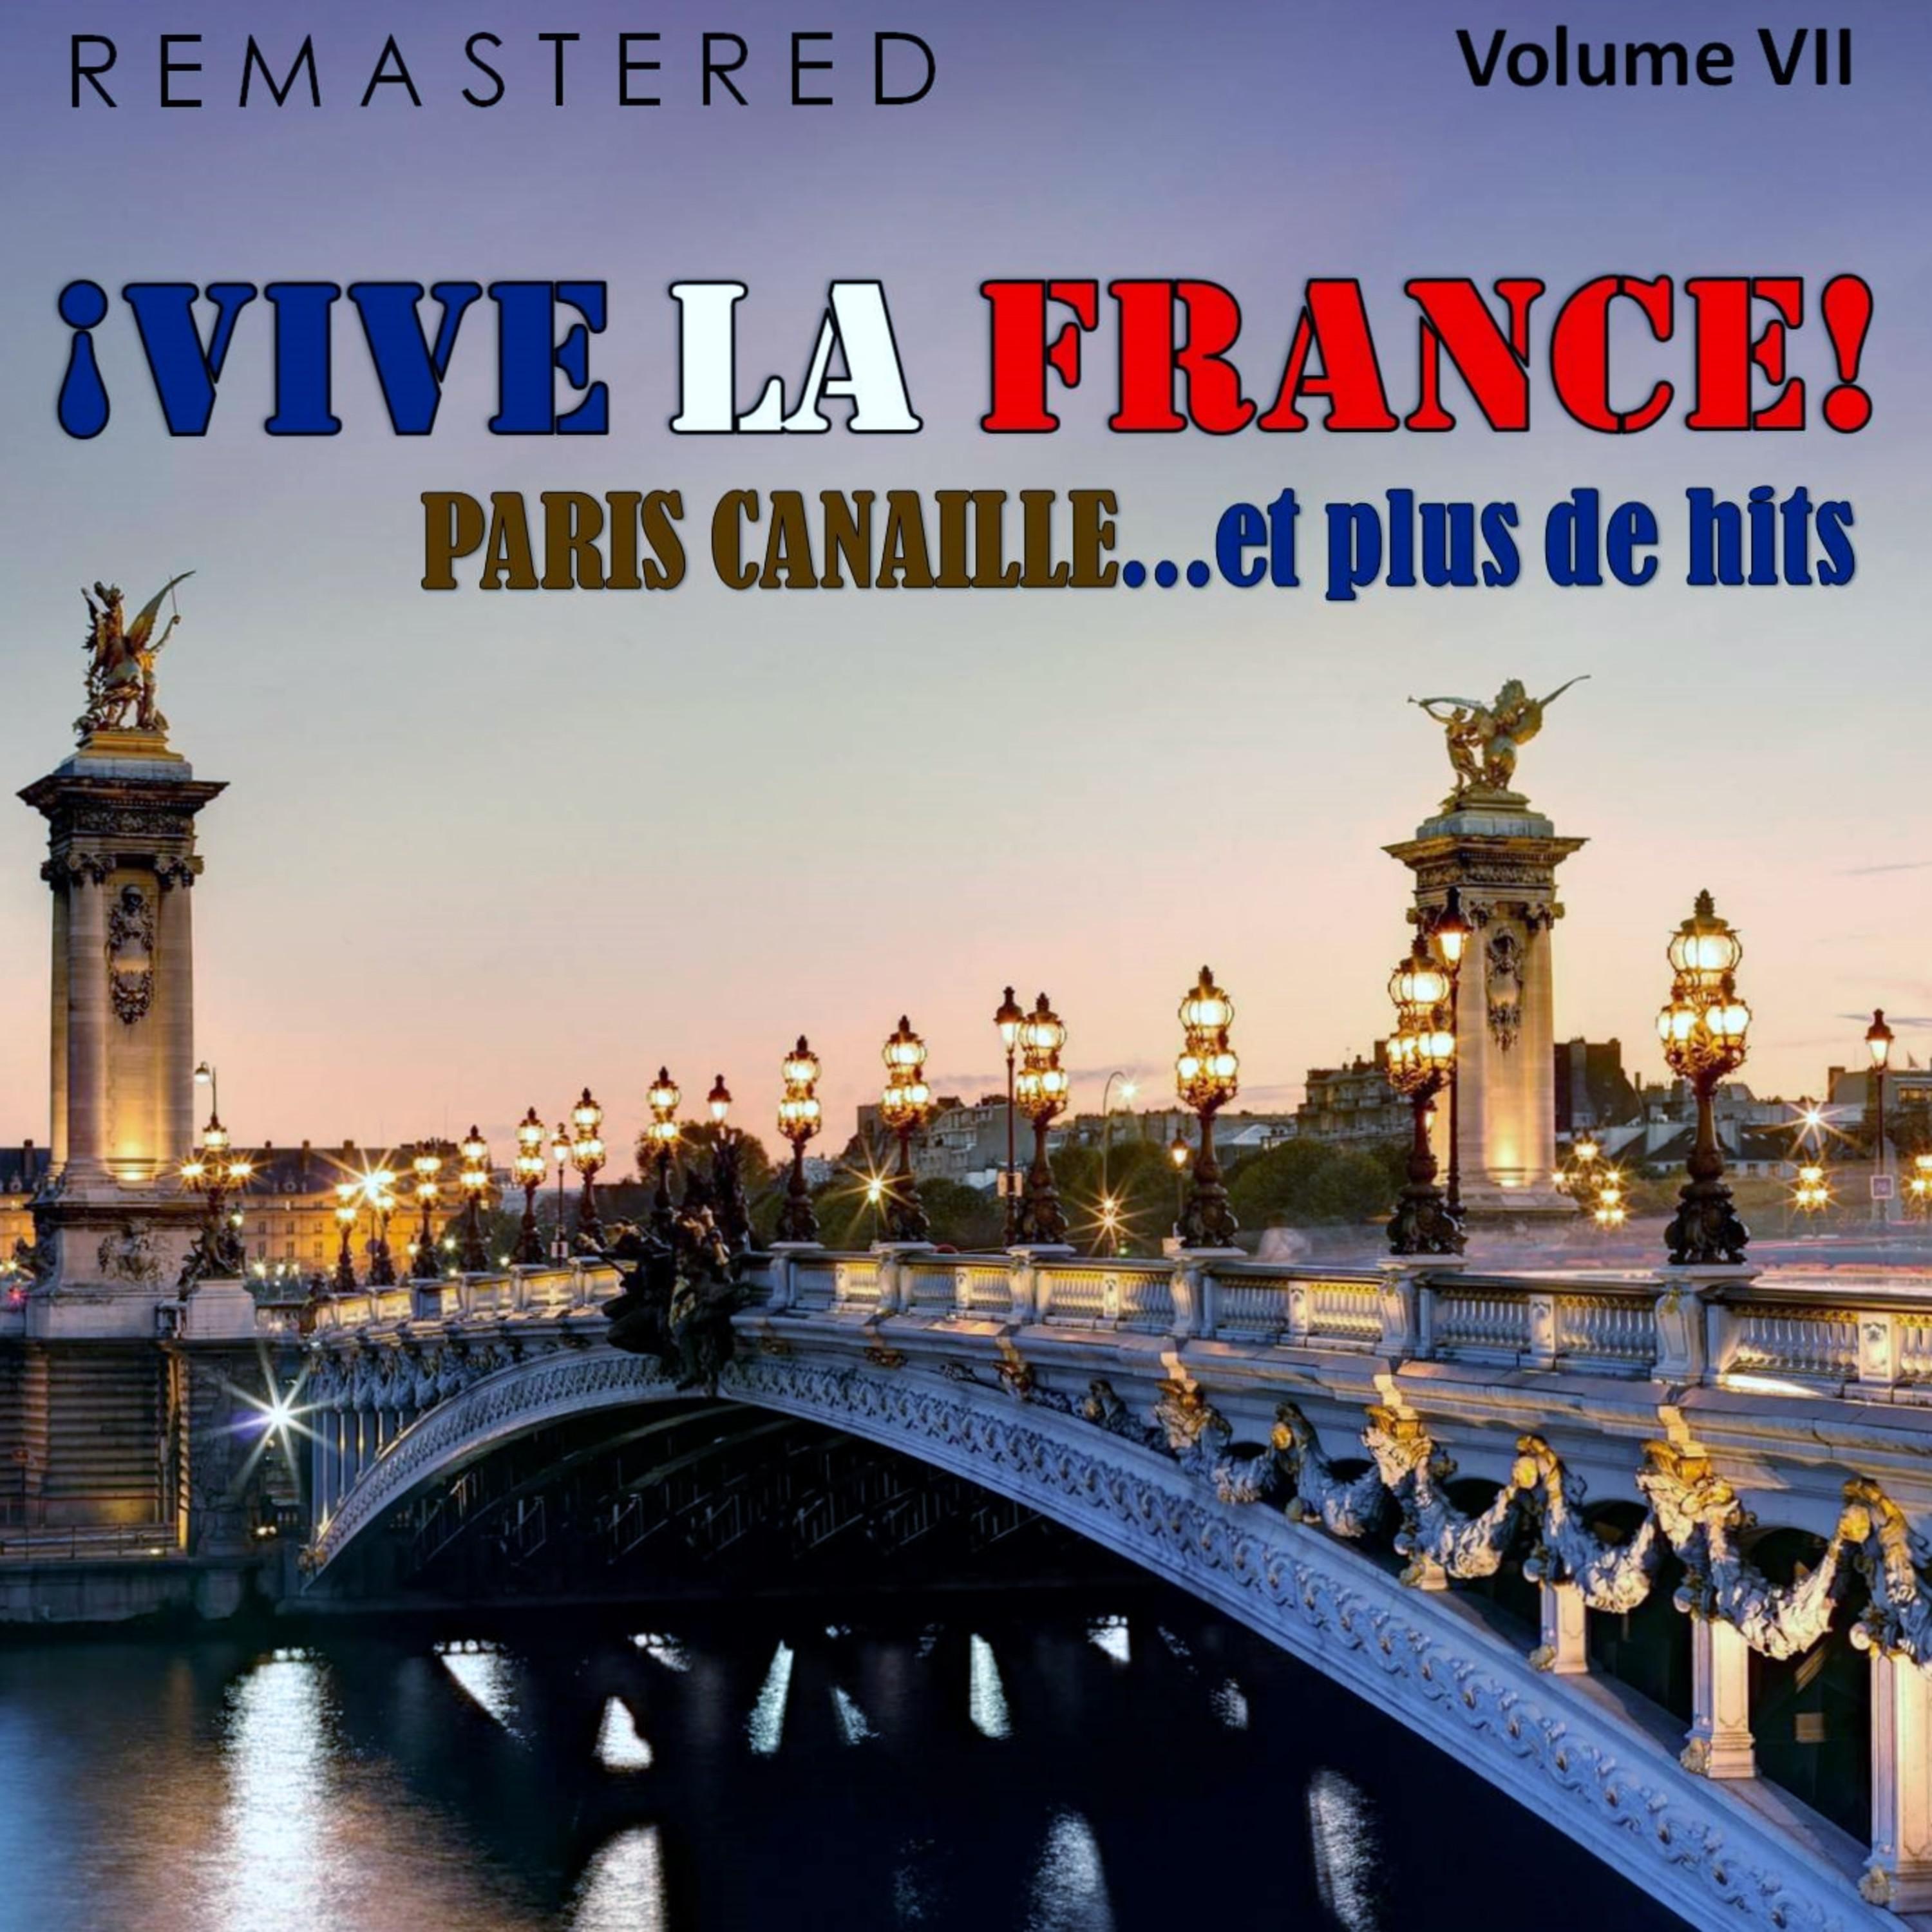 Vive la France!, Vol. 7  Paris canaille... et plus de hits Remastered